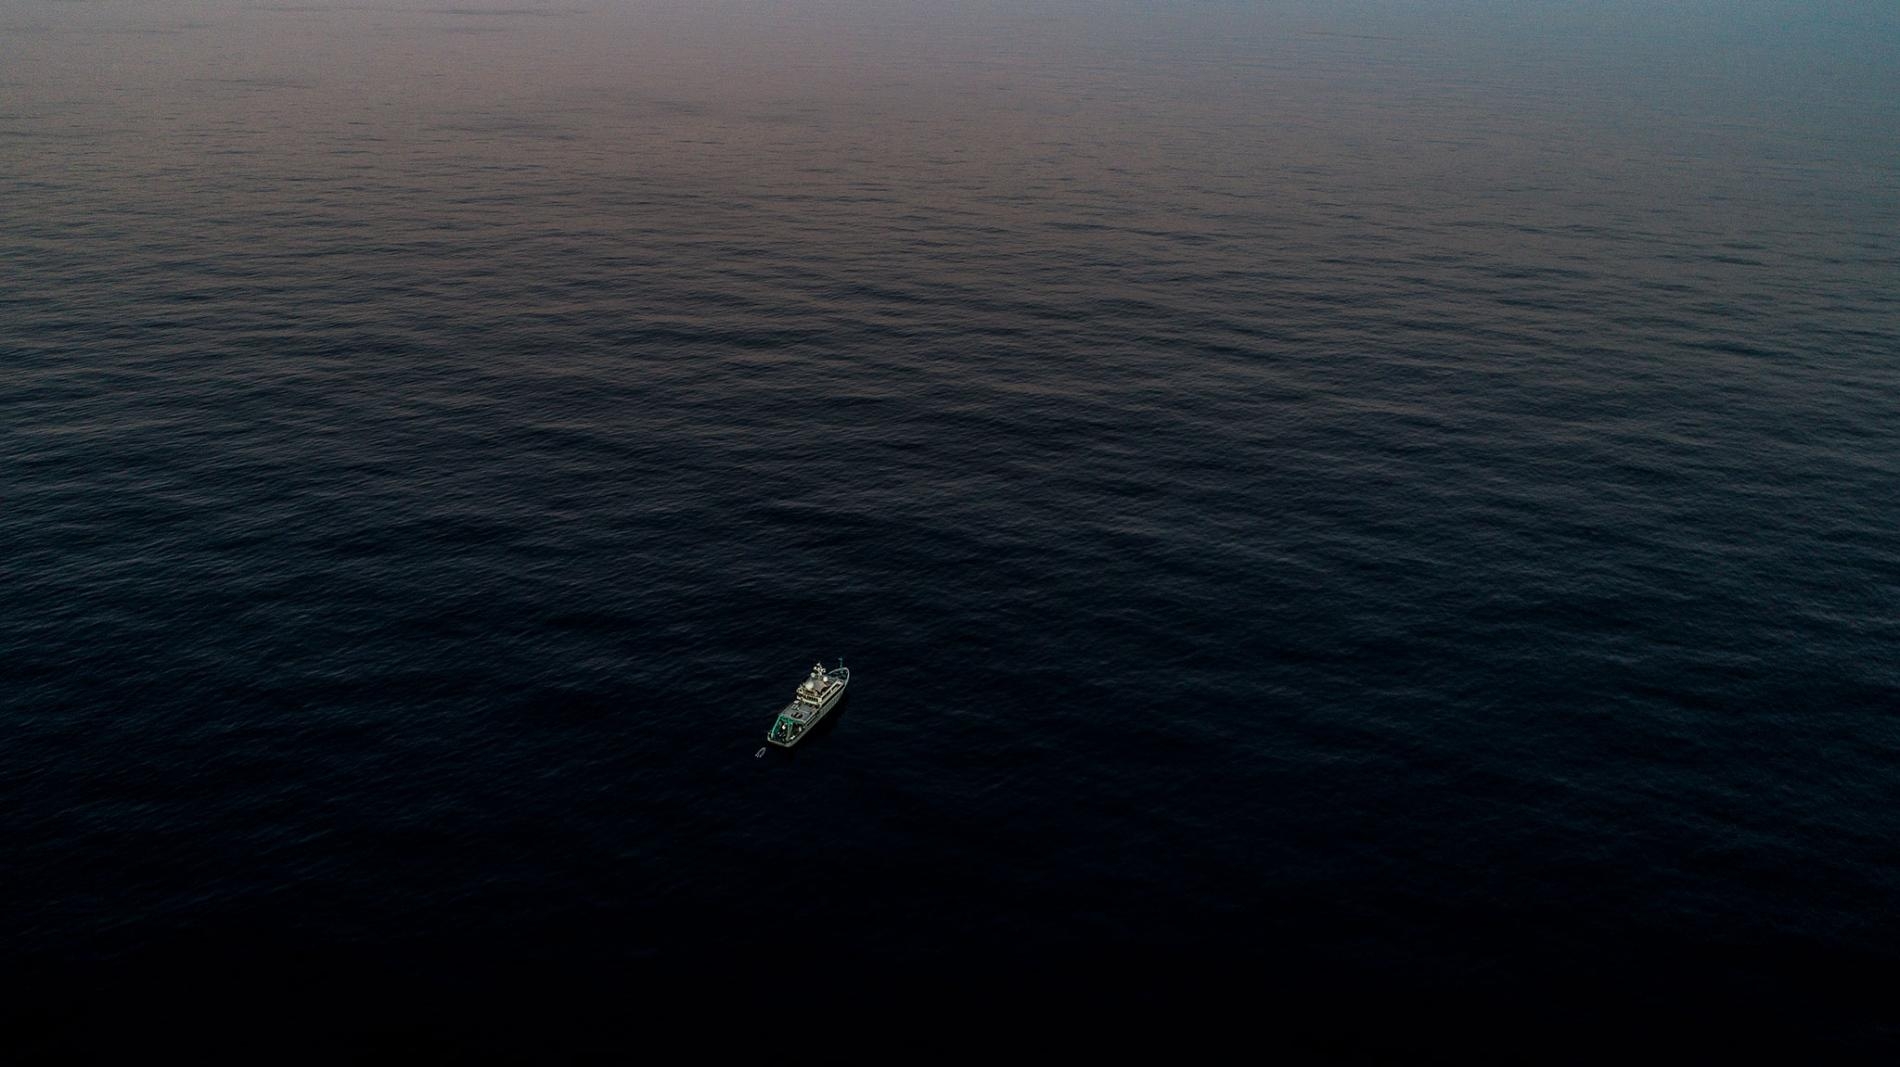 內燃機研究船 Alucia號在離鱈角（Cape Cod）海岸大約161公里的海上，正要前往海底山國家海洋紀念區（Seamounts Marine National Monument）調查當地峽谷中的深海珊瑚生態系。 PHOTOGRAPH BY LUIS LAMAR, NATIONAL GEOGRAPHIC